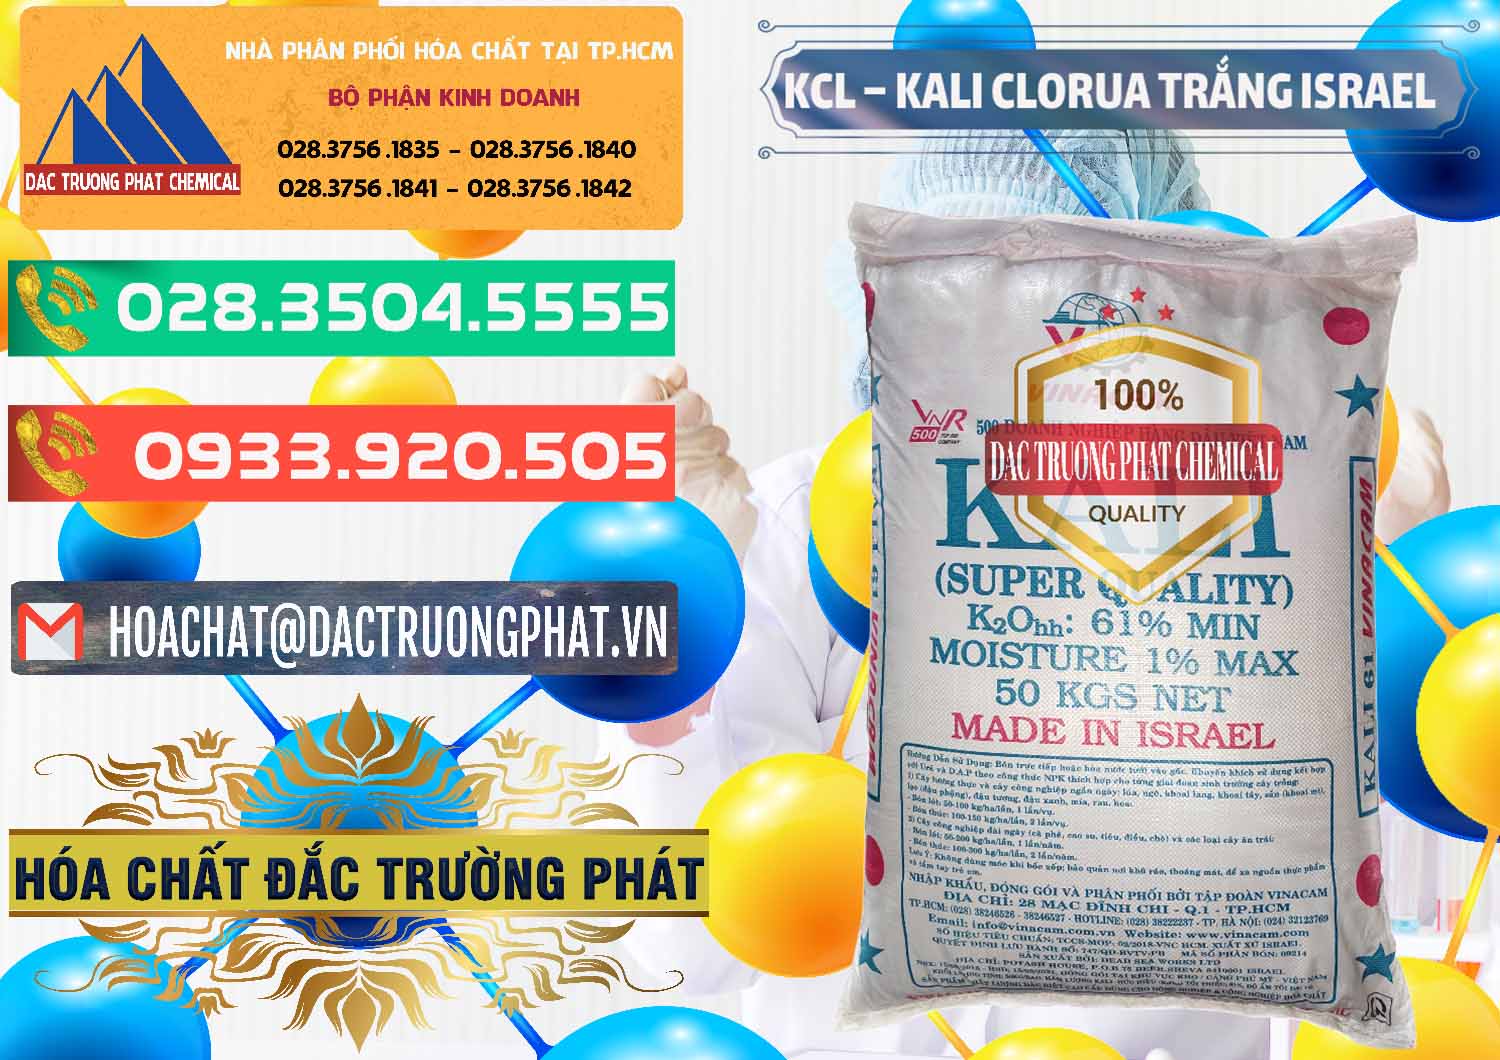 Cty chuyên kinh doanh ( bán ) KCL – Kali Clorua Trắng Israel - 0087 - Nơi phân phối & cung ứng hóa chất tại TP.HCM - congtyhoachat.com.vn